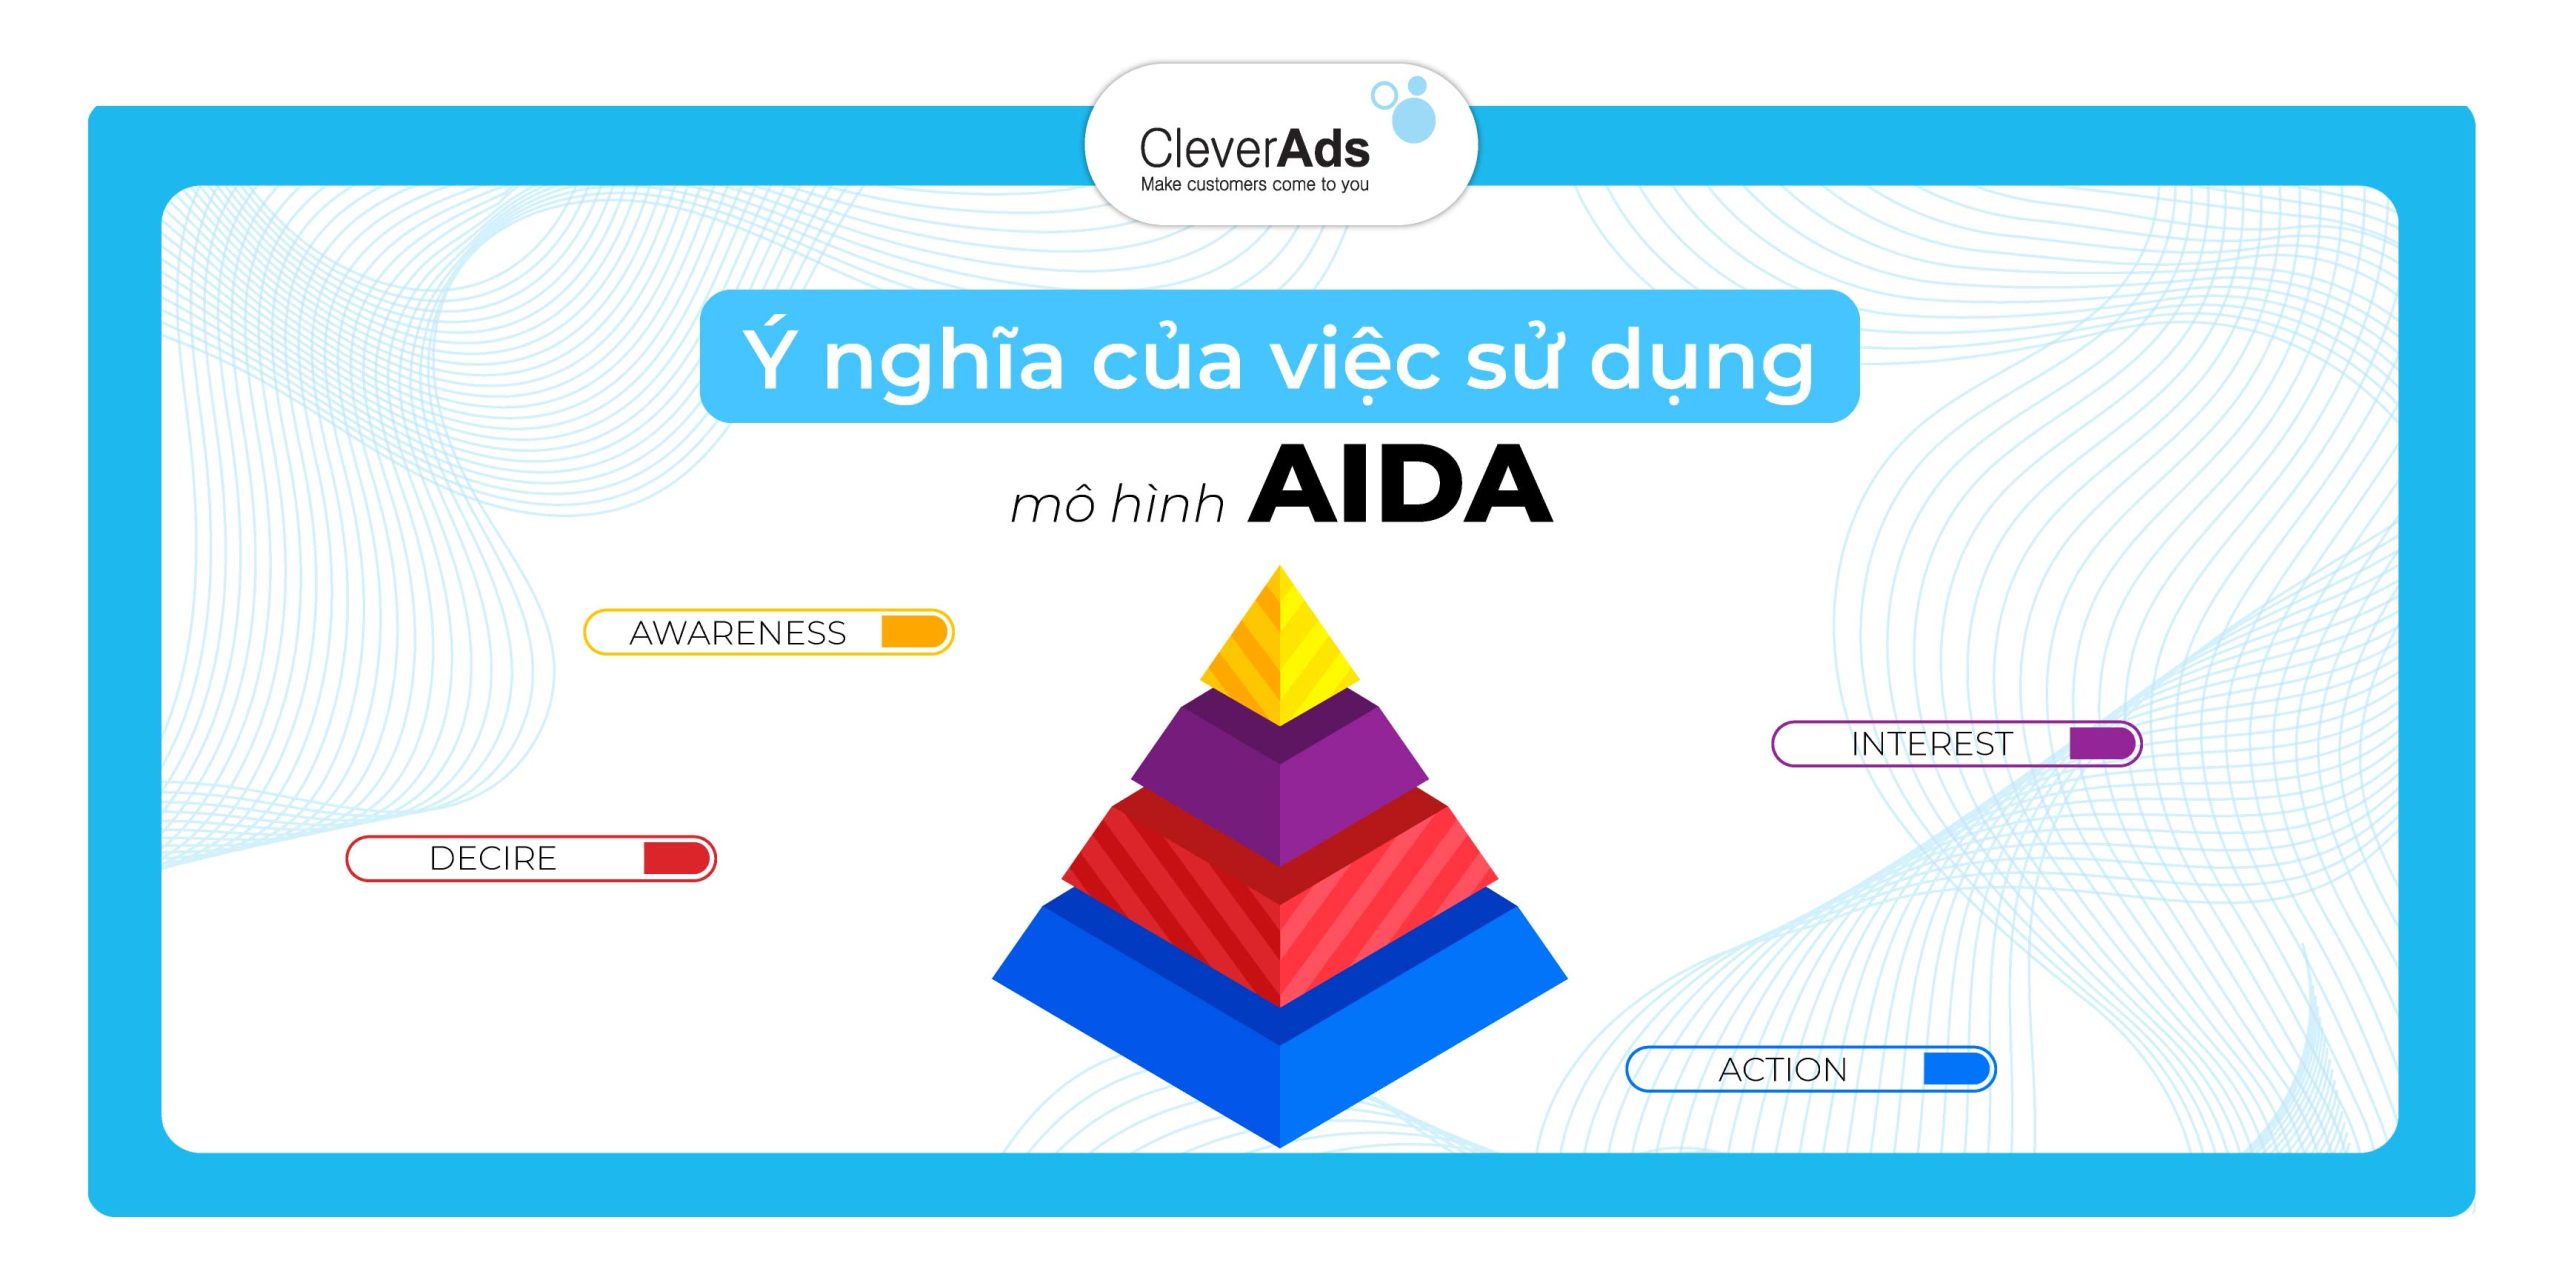 AIDA là gì Cách ứng dụng công thức AIDA trong viết content tăng hiệu quả  bán hàng